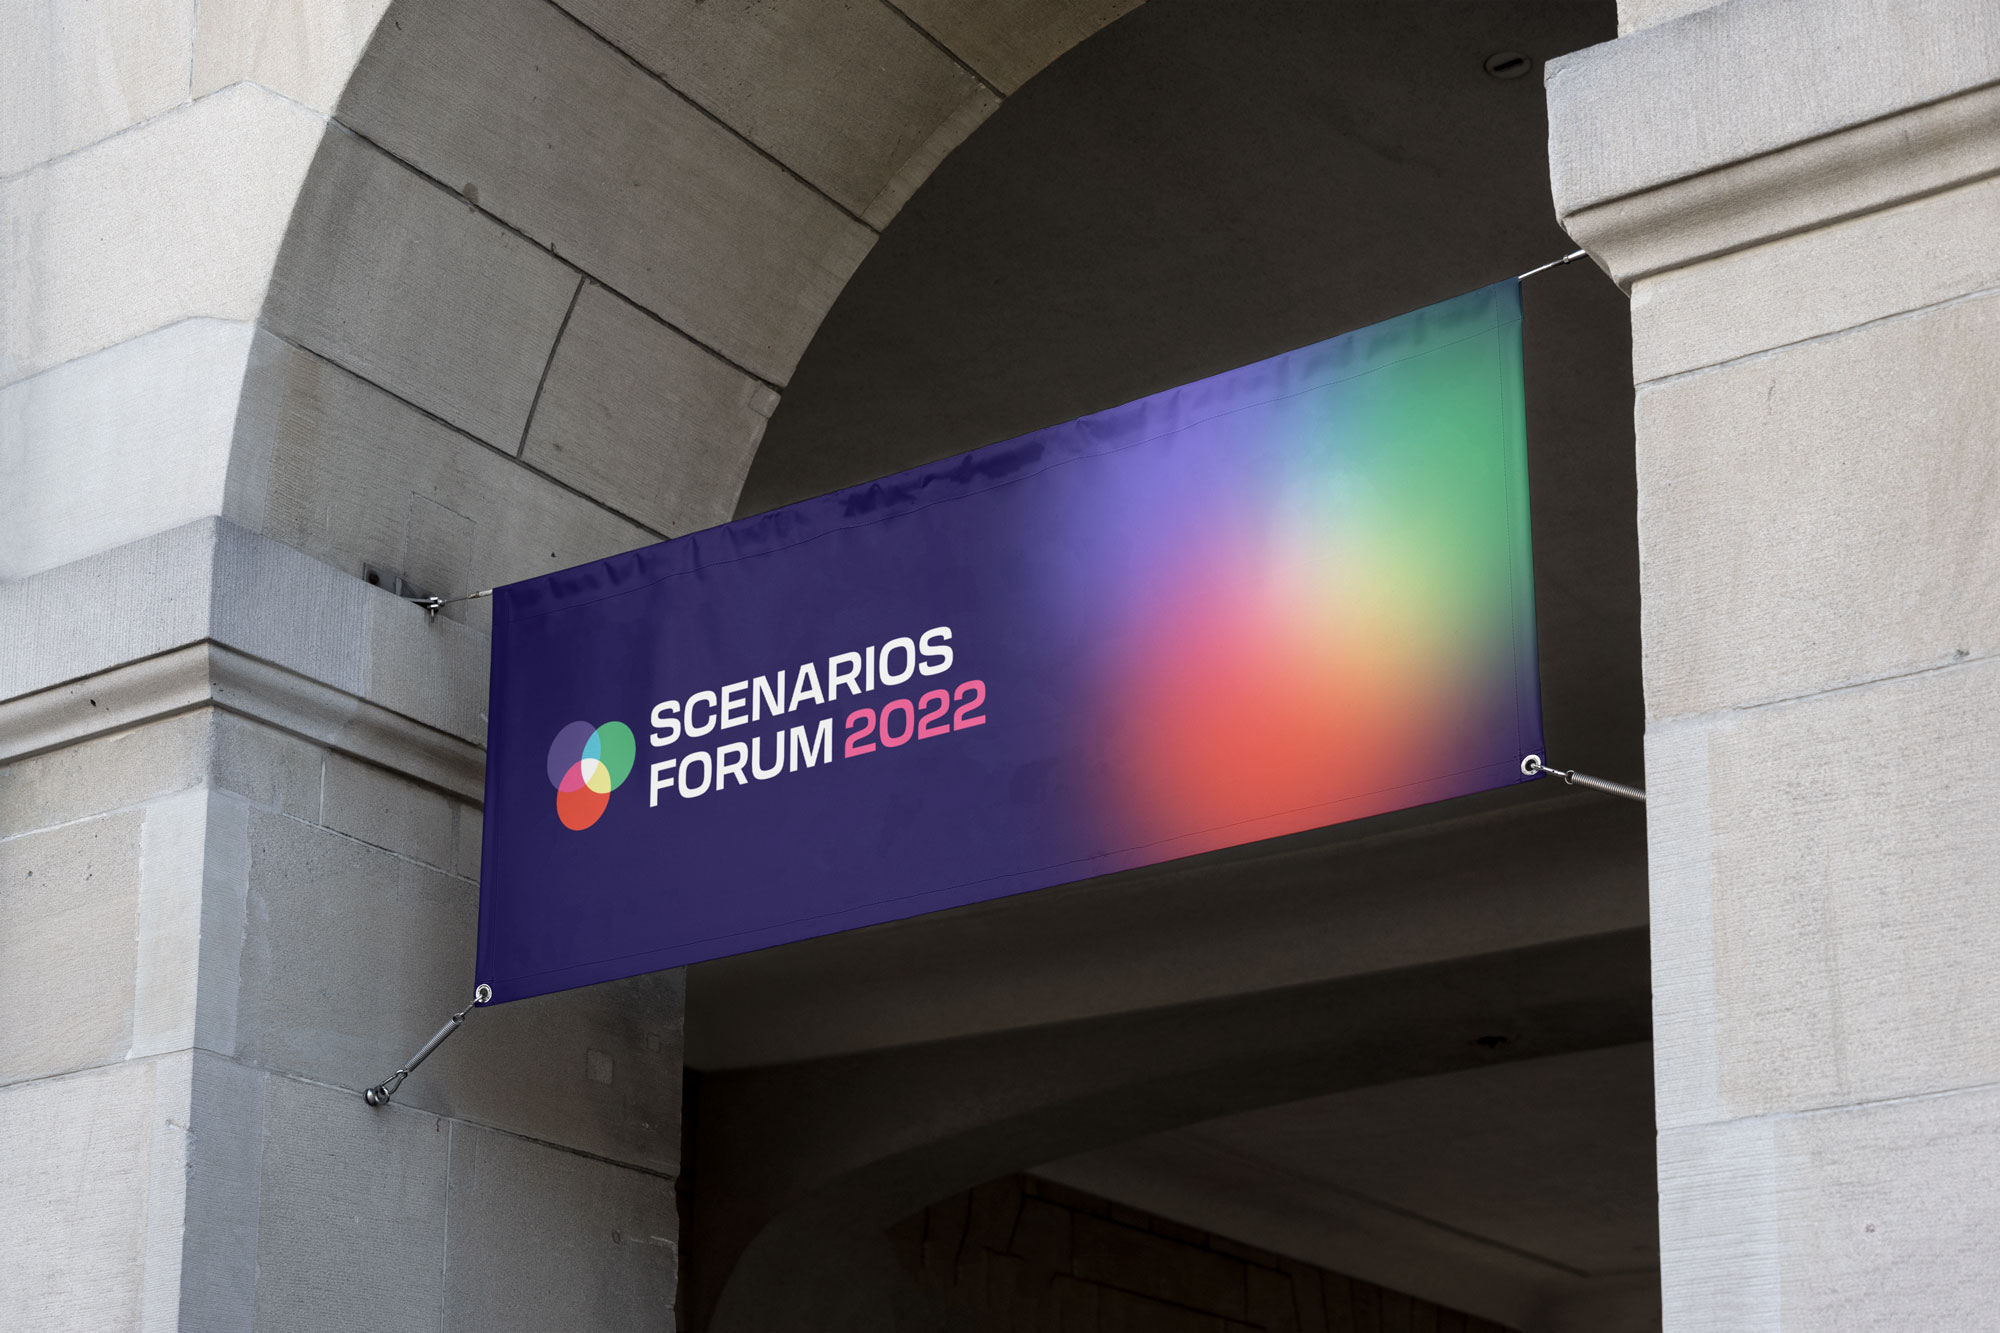 Scenarios Forum banner